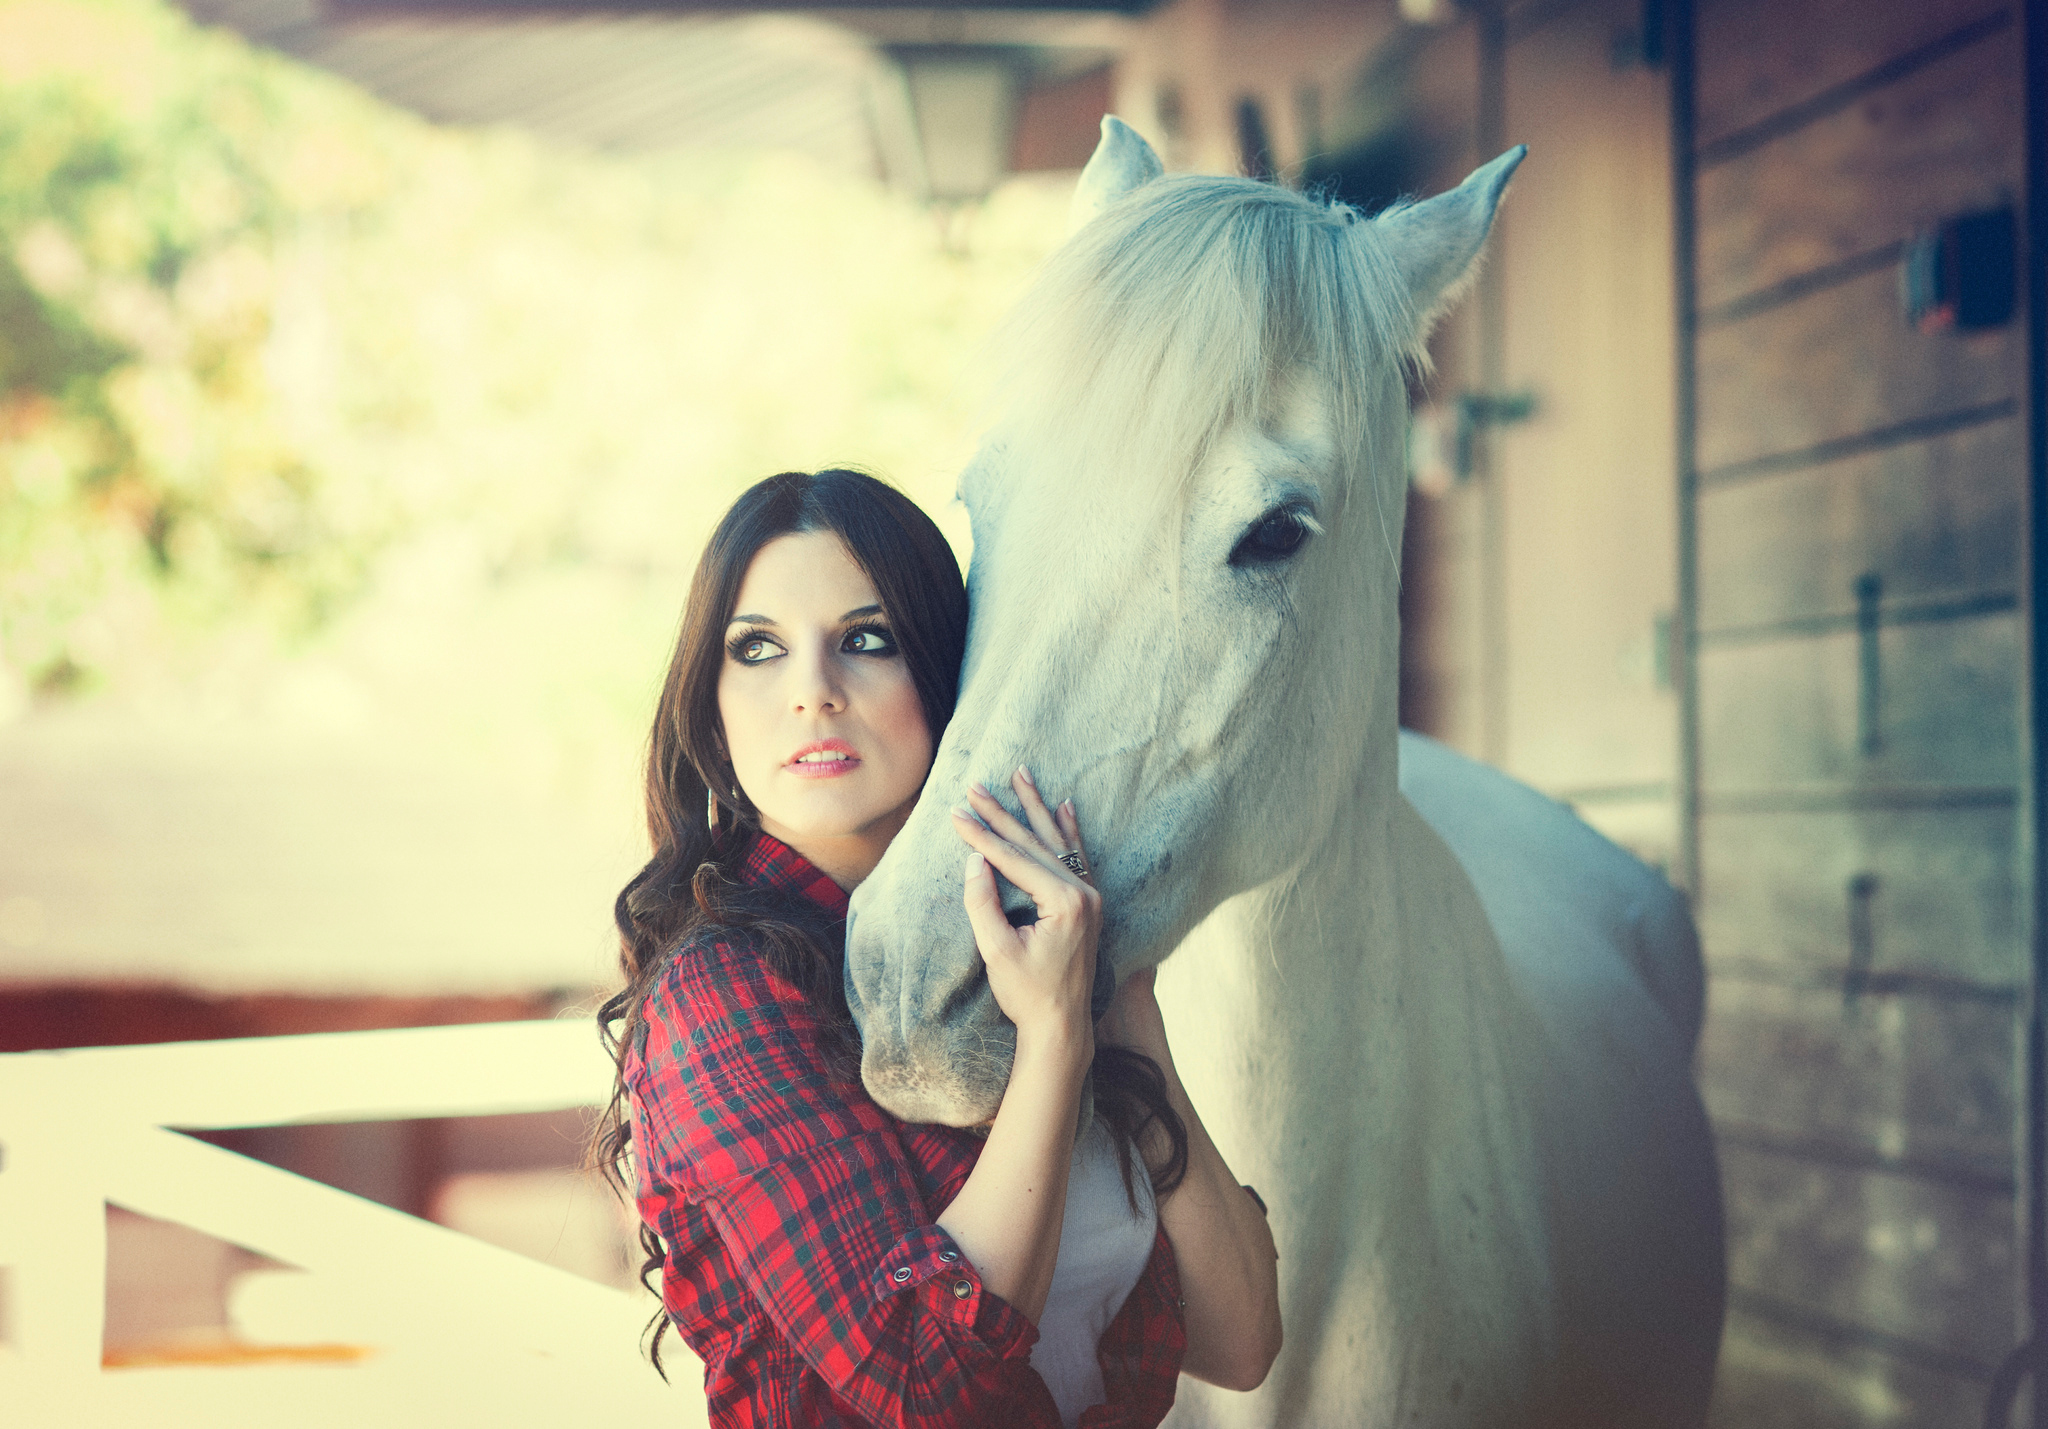 Русская девушка с лошадью. Девушка с лошадью. Девушка и белая лошадь. Девушка рядом с лошадью. Девочка на лошади.